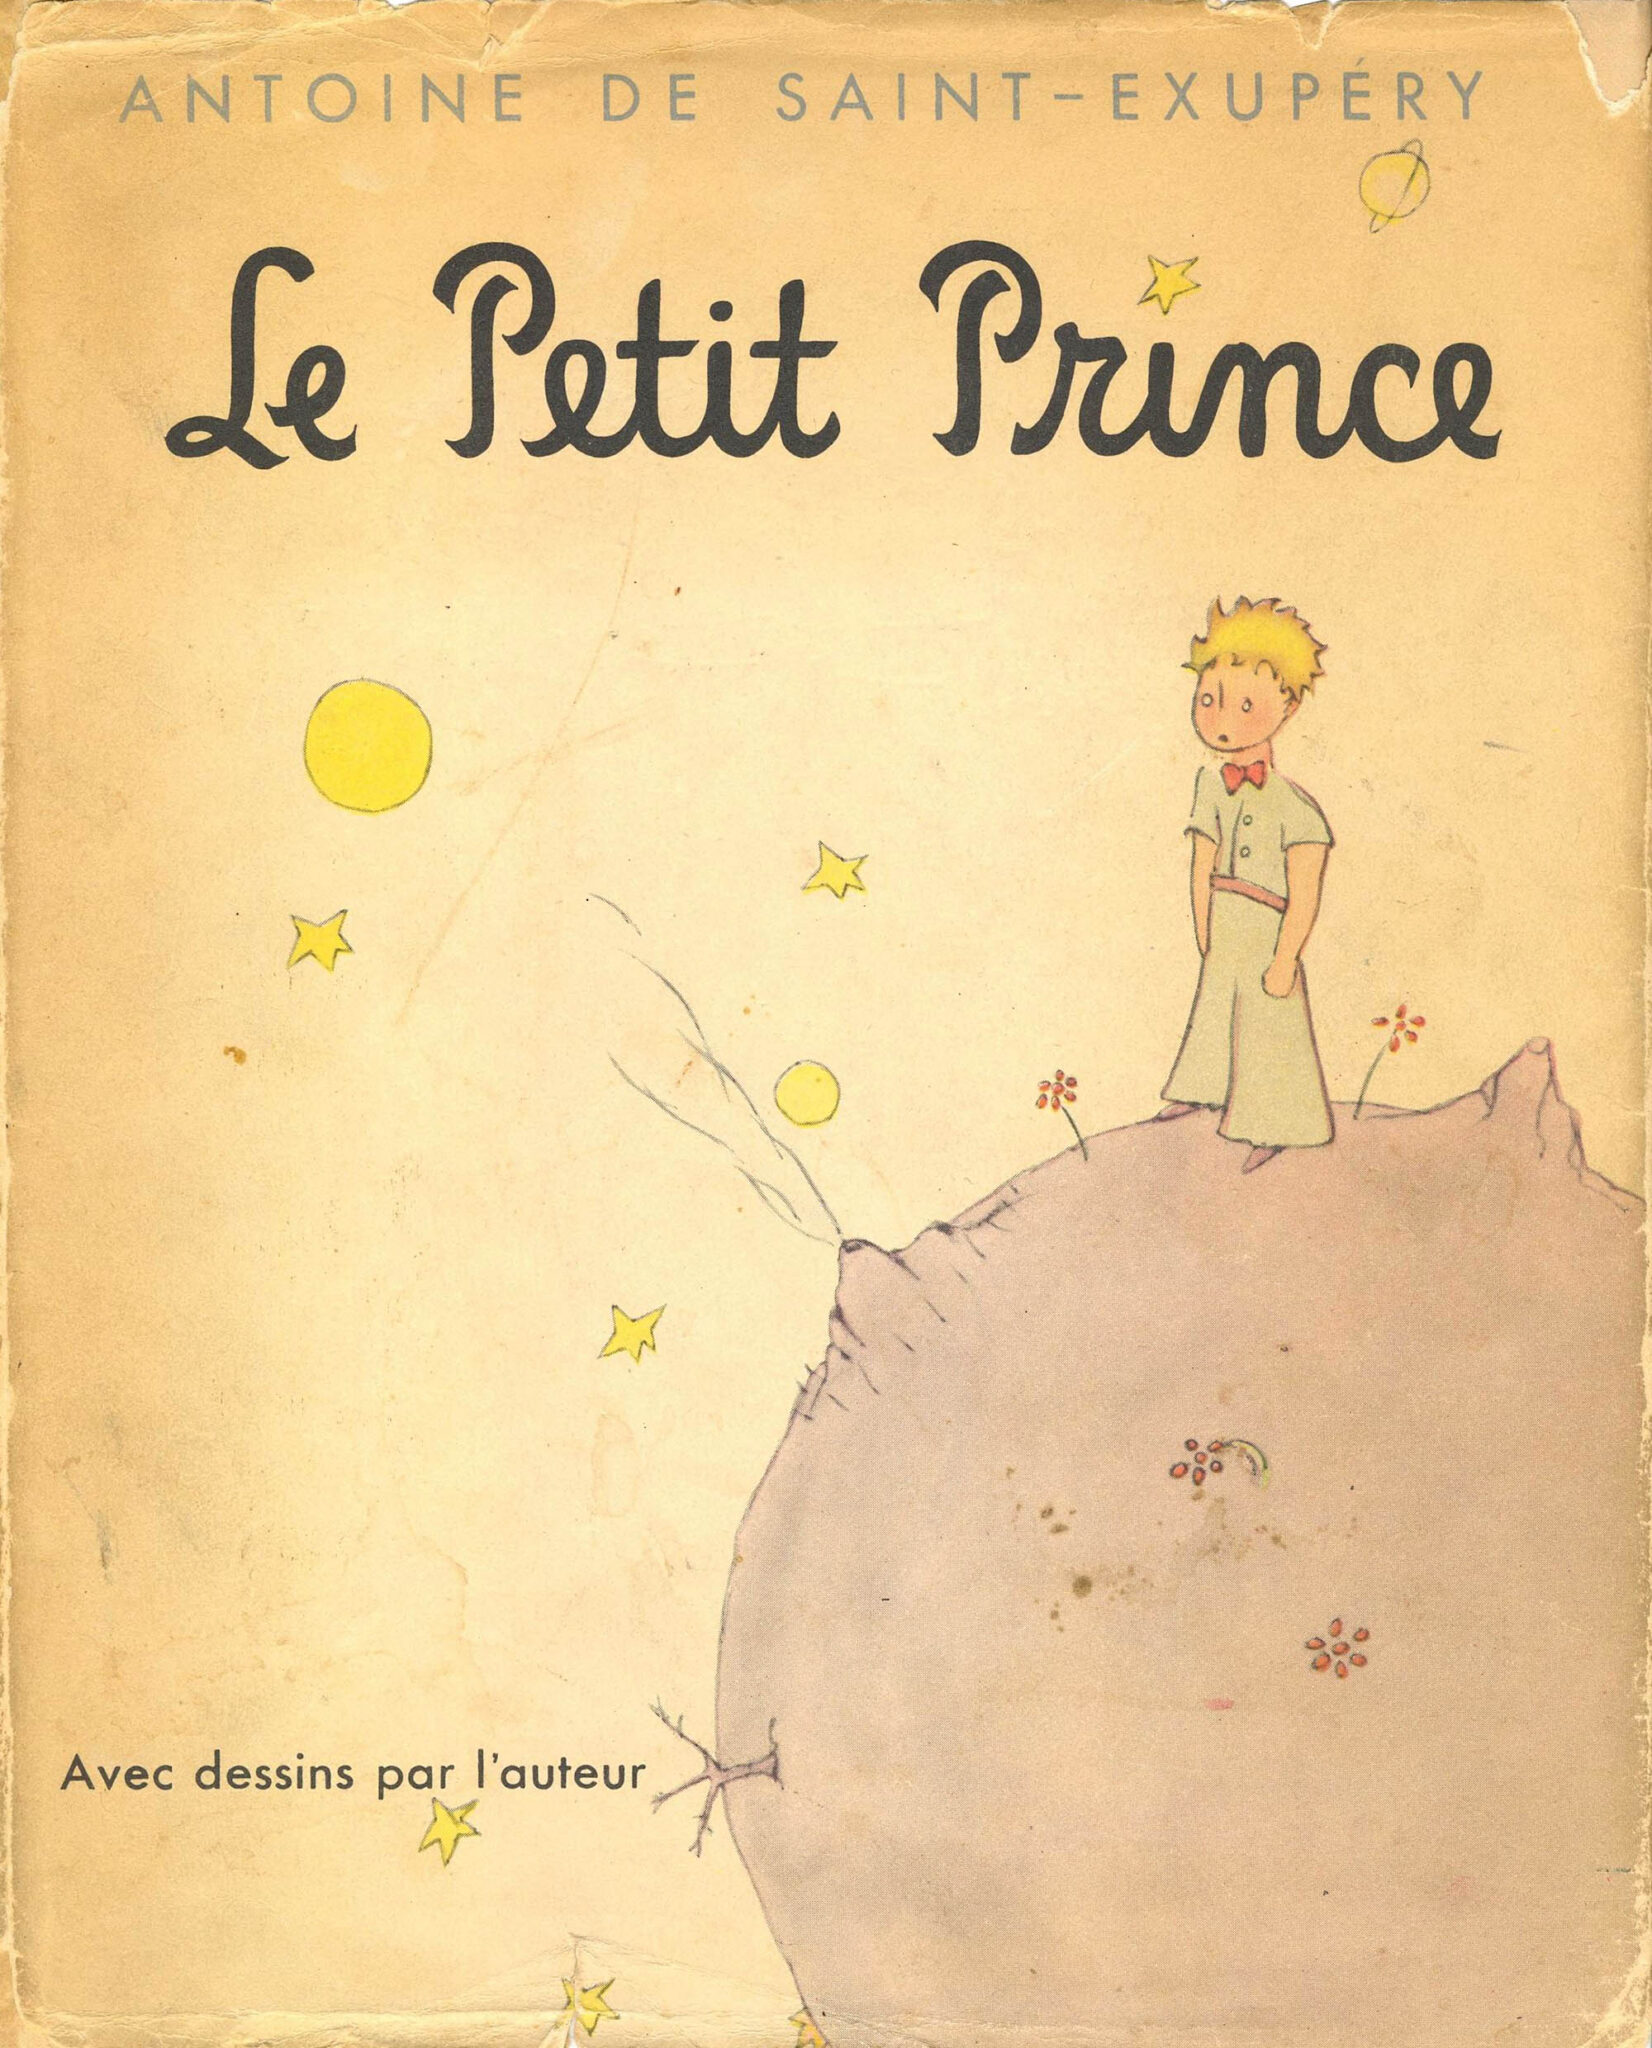 Couverture du livre "Le petit Prince" d'Antoine de Saint-Exupéry avec le petit prince sur la lune